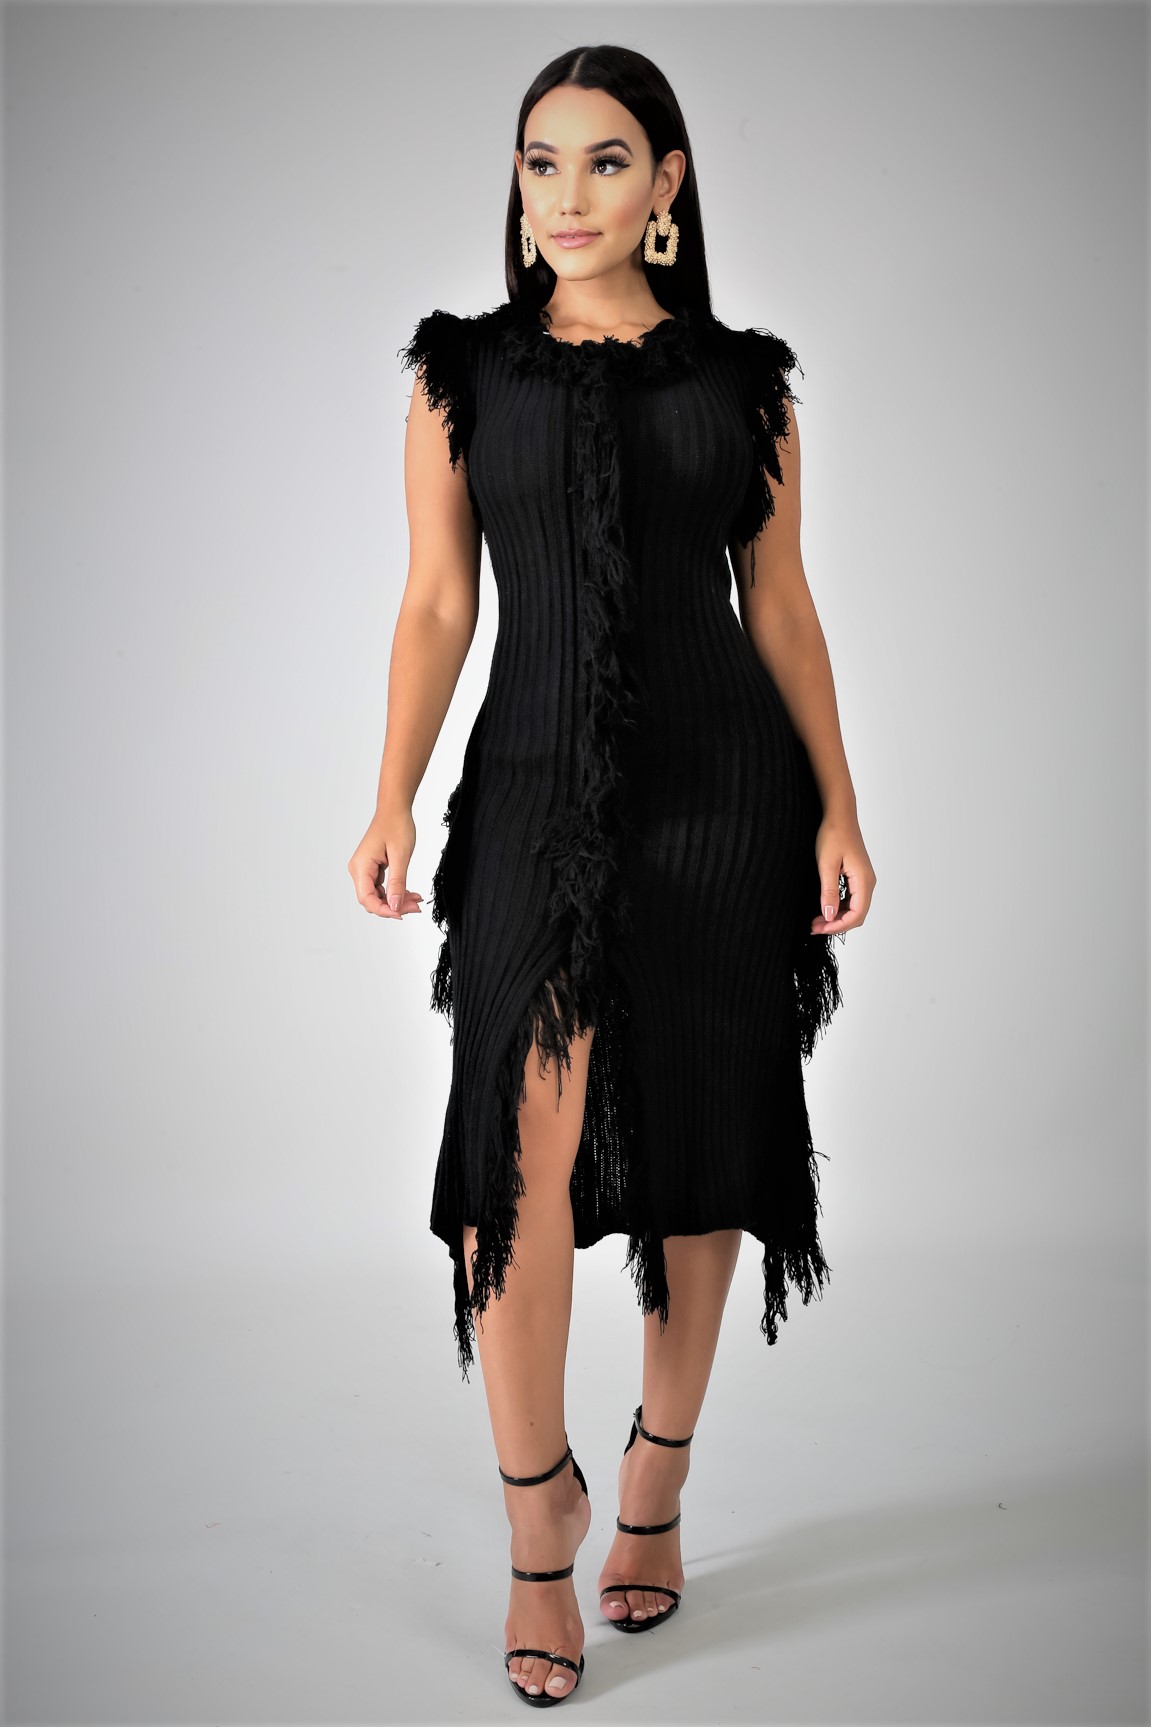 Black Knit Shreds Midi Dress › Critique' Boutique - Online Boutique ...